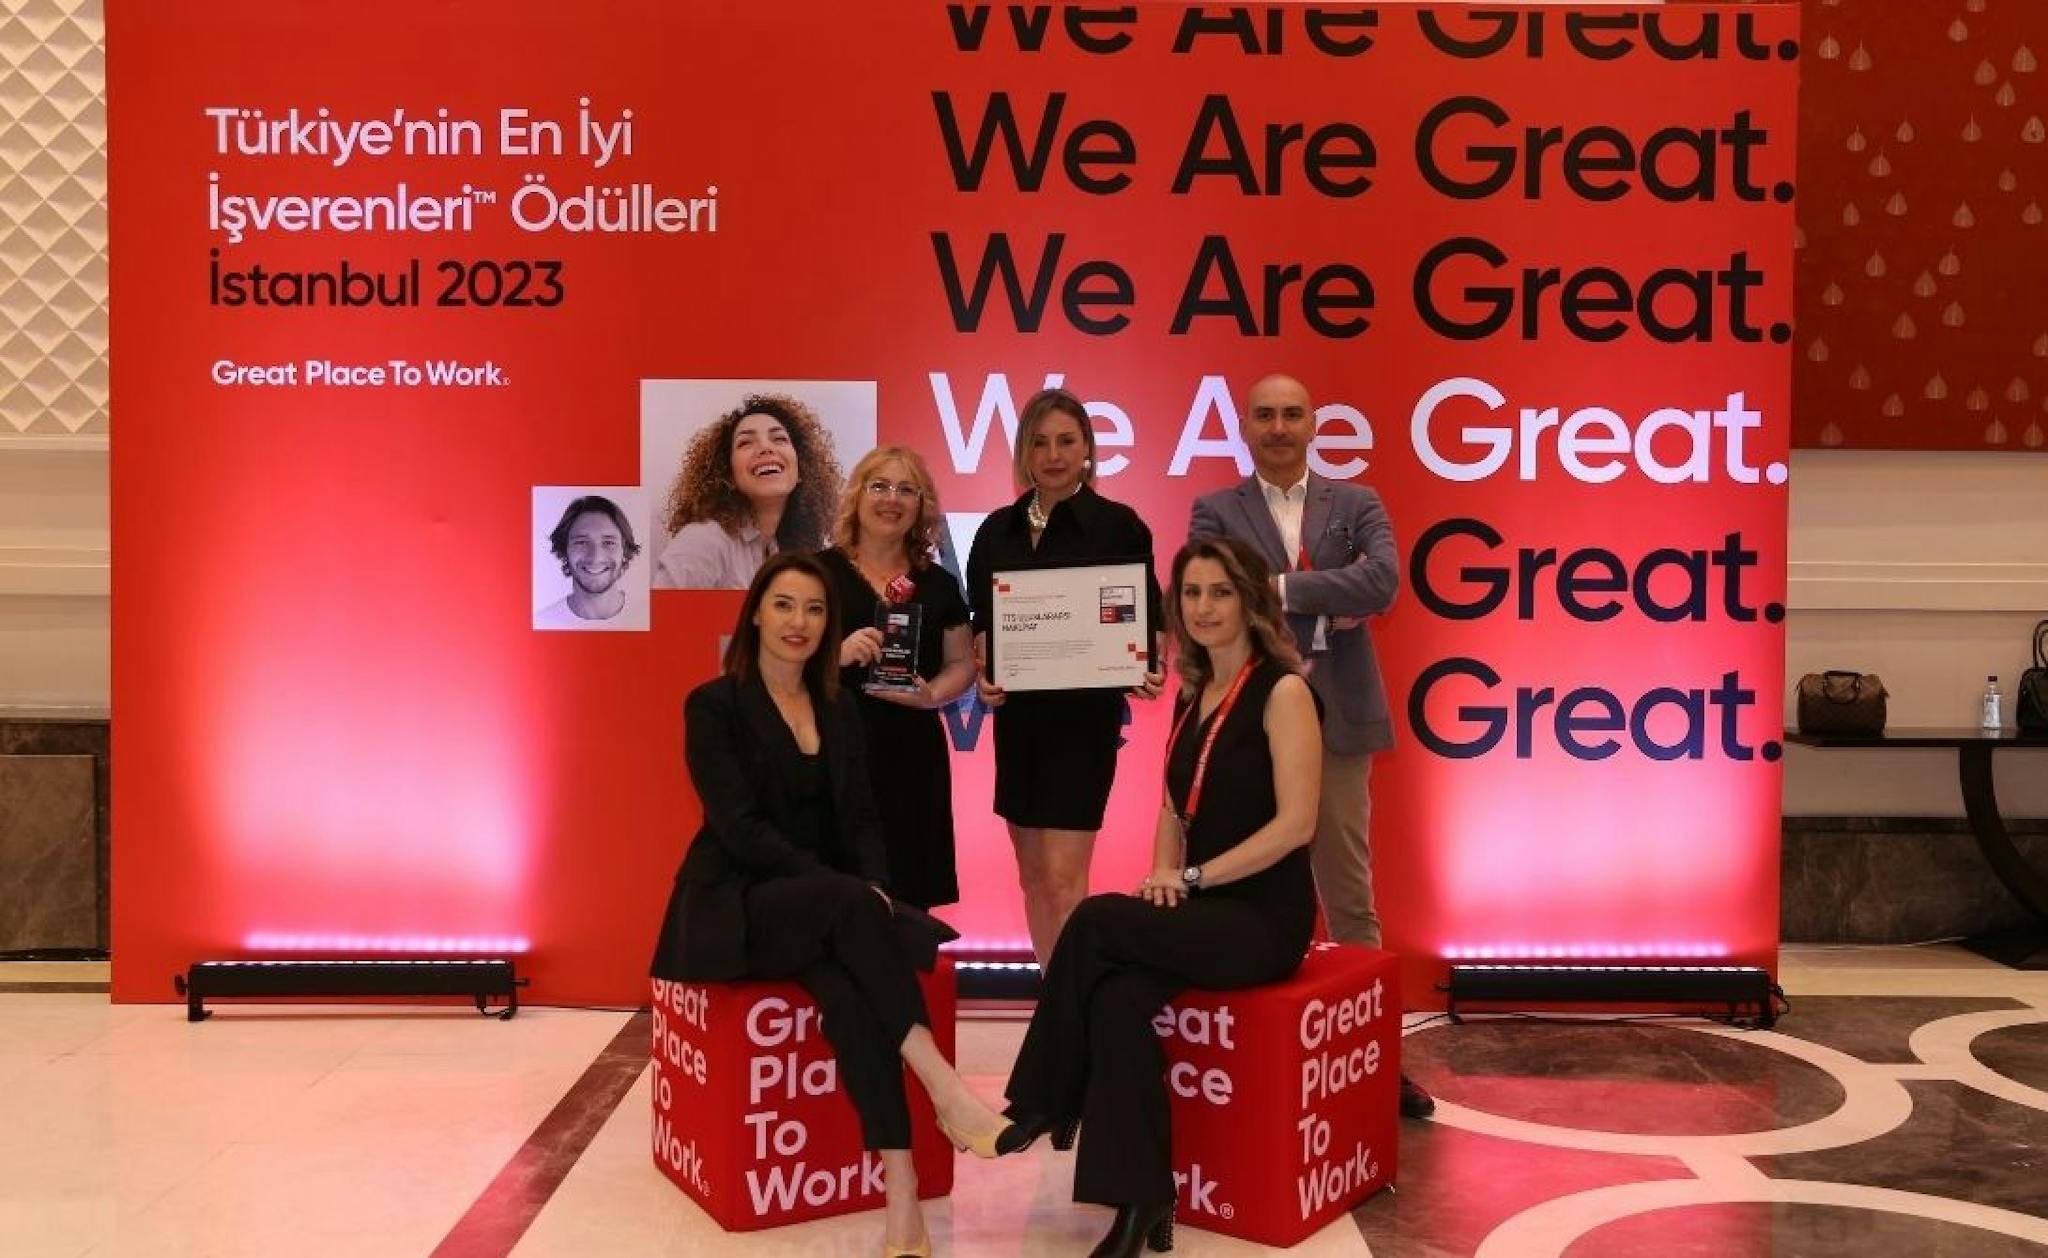 Great Place to Work Türkiye’nin En İyi İşverenleri Ödülü’ne Layık Görüldük!